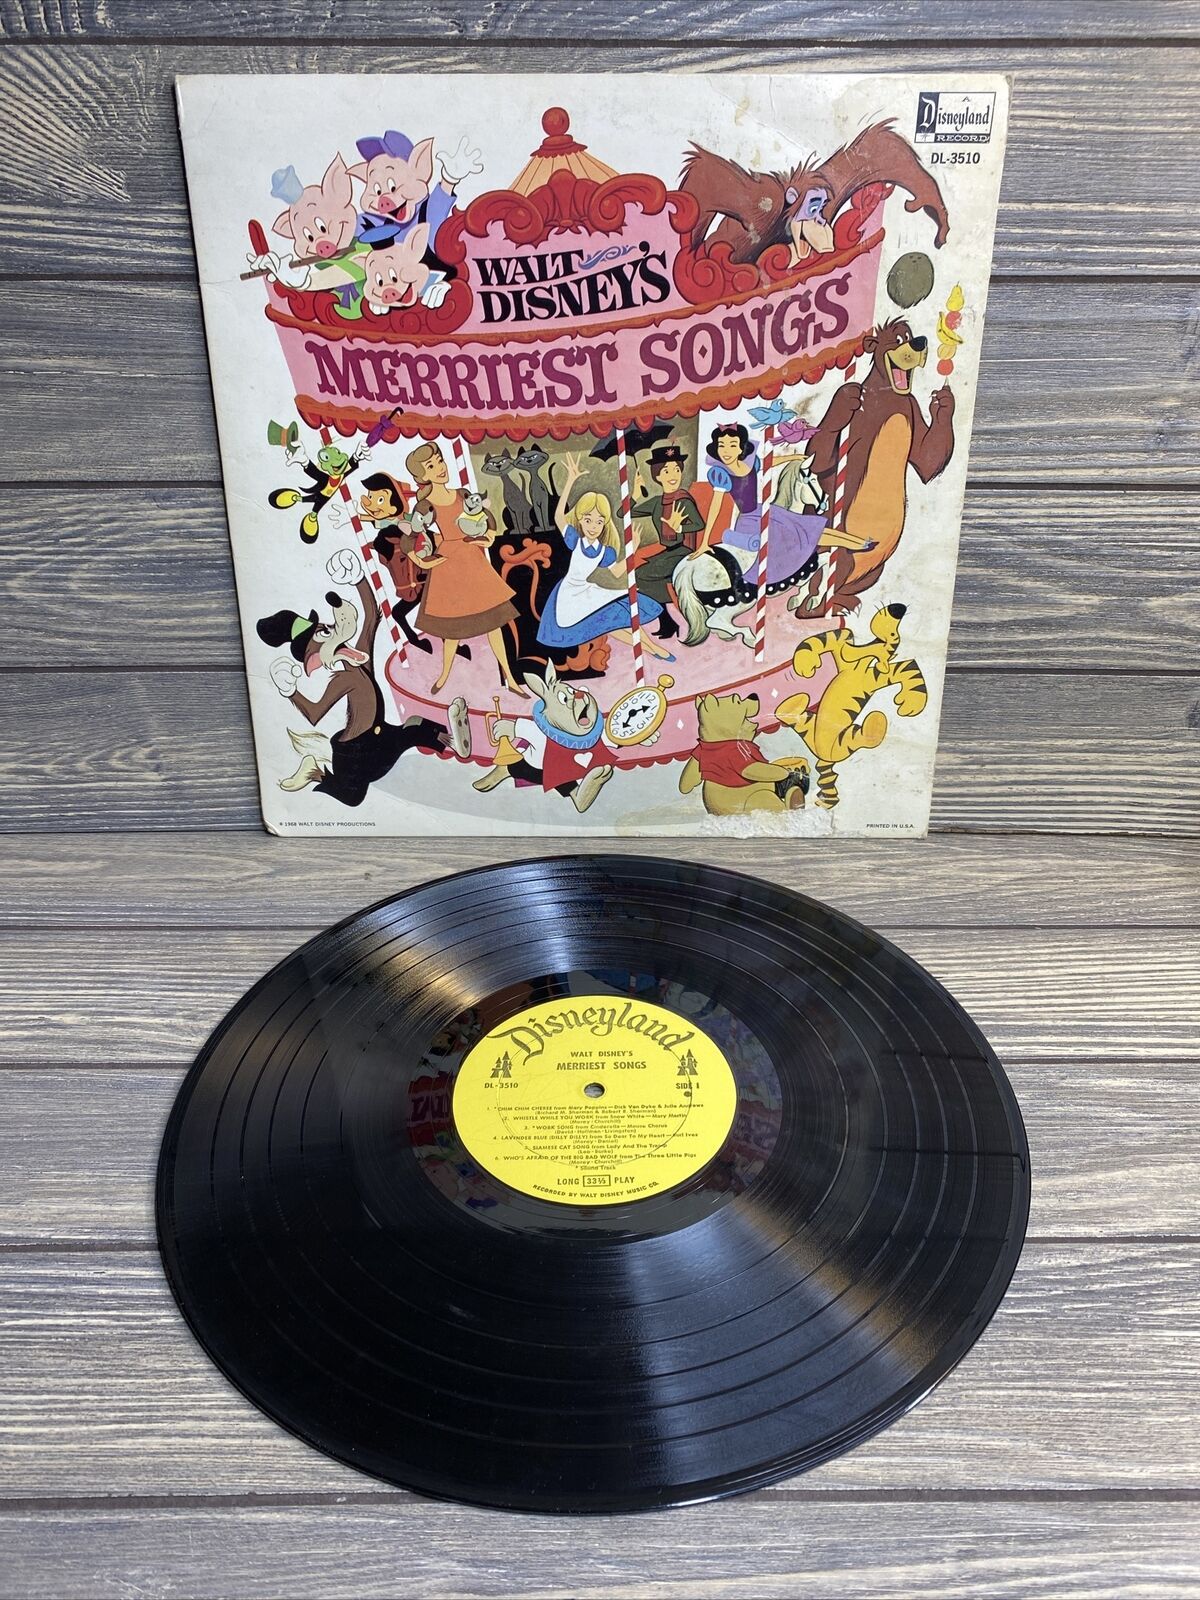 Vintage Disneyland Records 1968 Walt Disneys Merriest Songs 33 1/3rpm